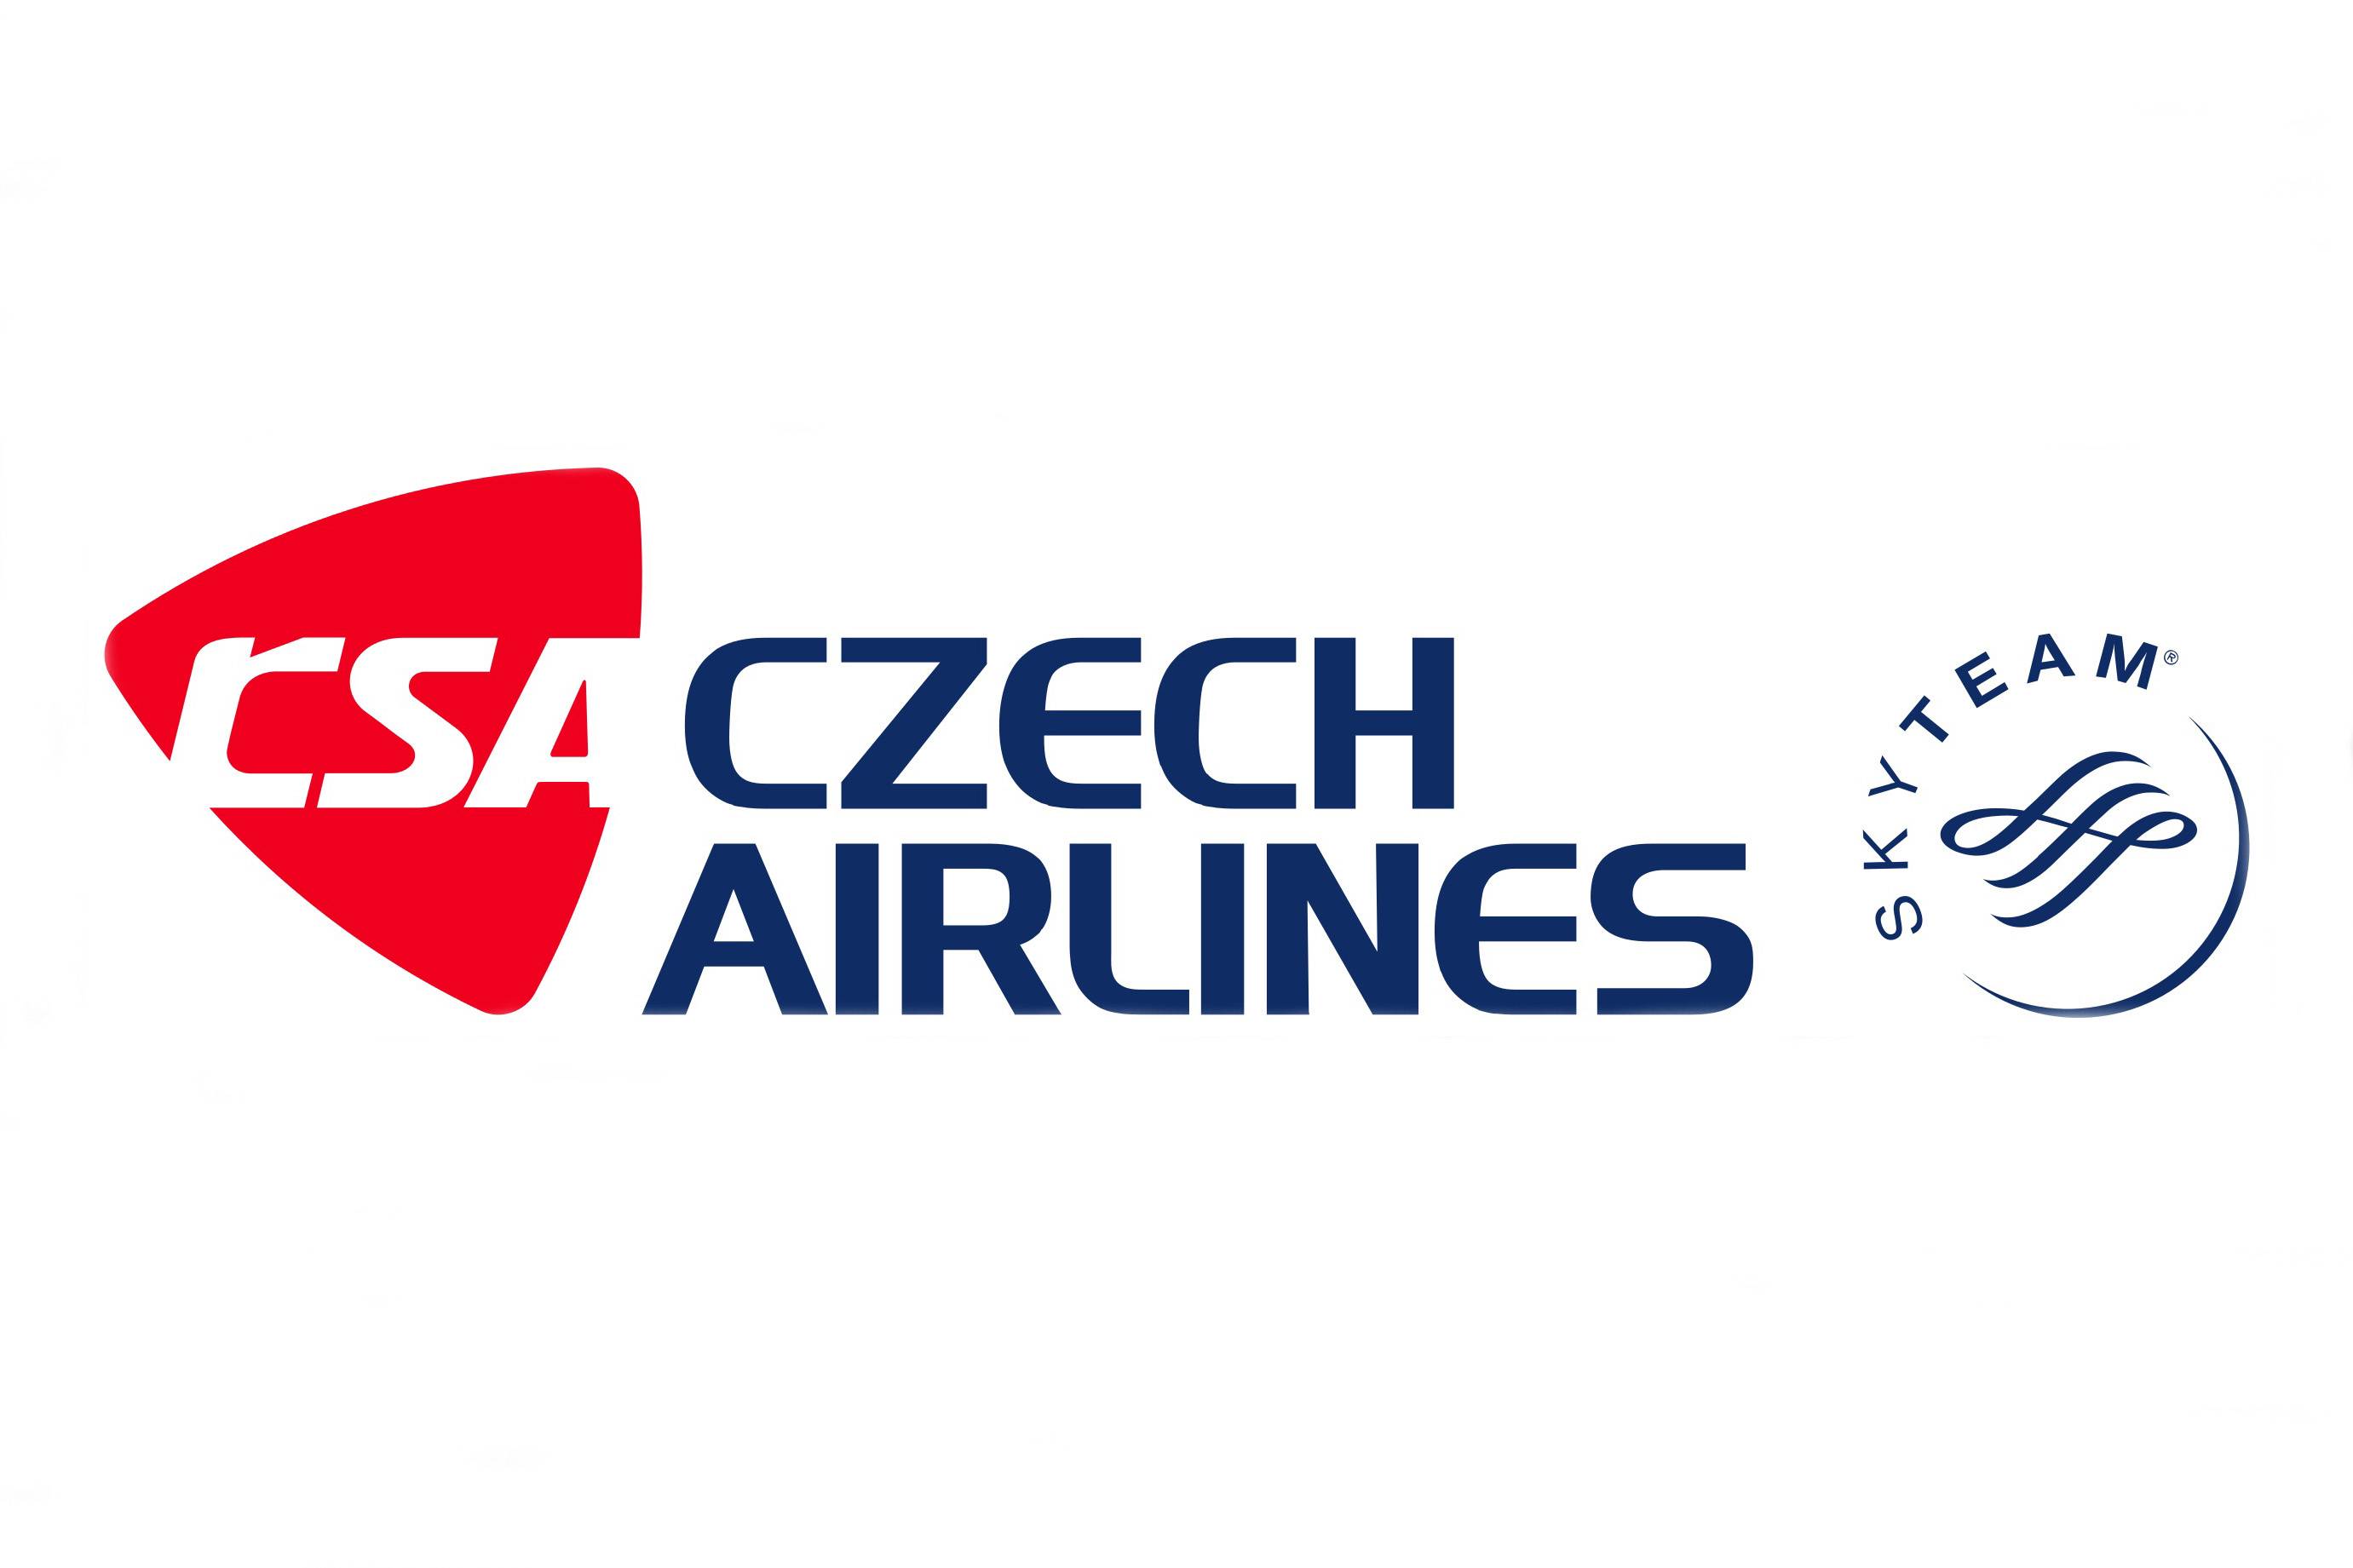 Czech airlines (чешские авиалинии) — международные грузовые перевозки